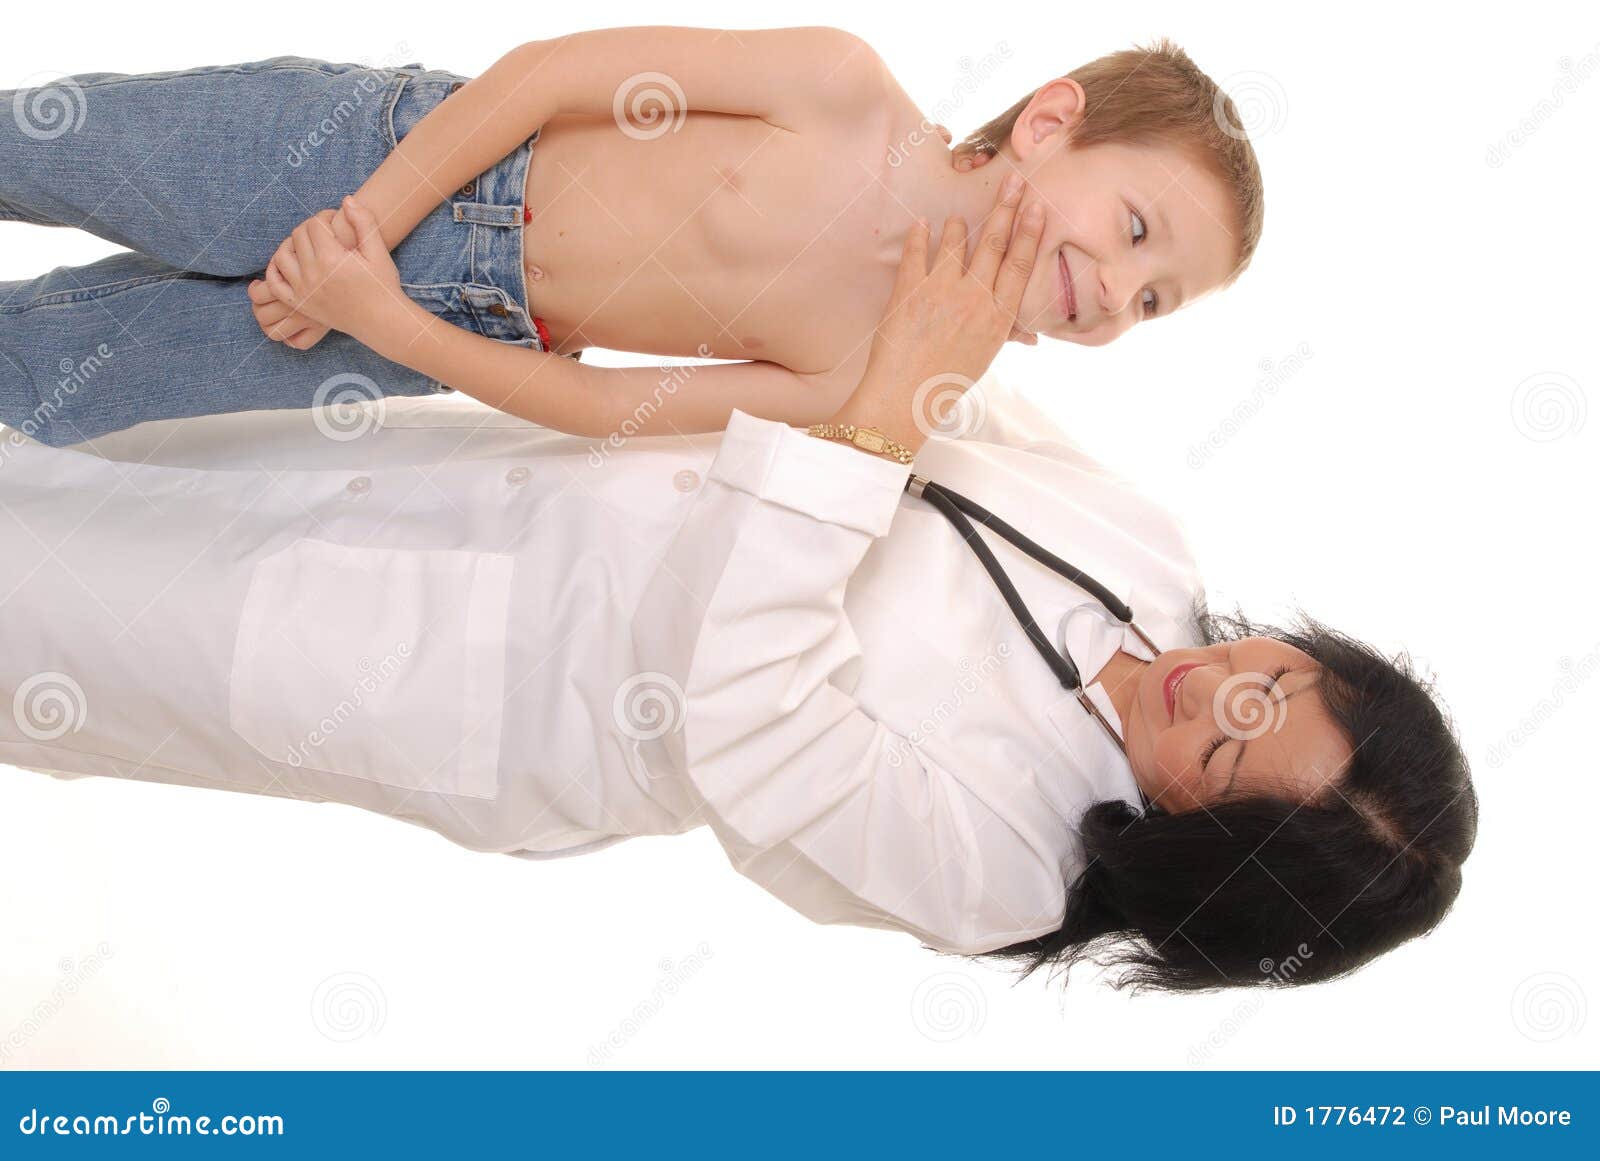 Врач осматривает мальчиков. Доктор осматривает мальчика. Мальчик у врача. Врач осматривает ребенка. Врач осматривает живот ребенка.